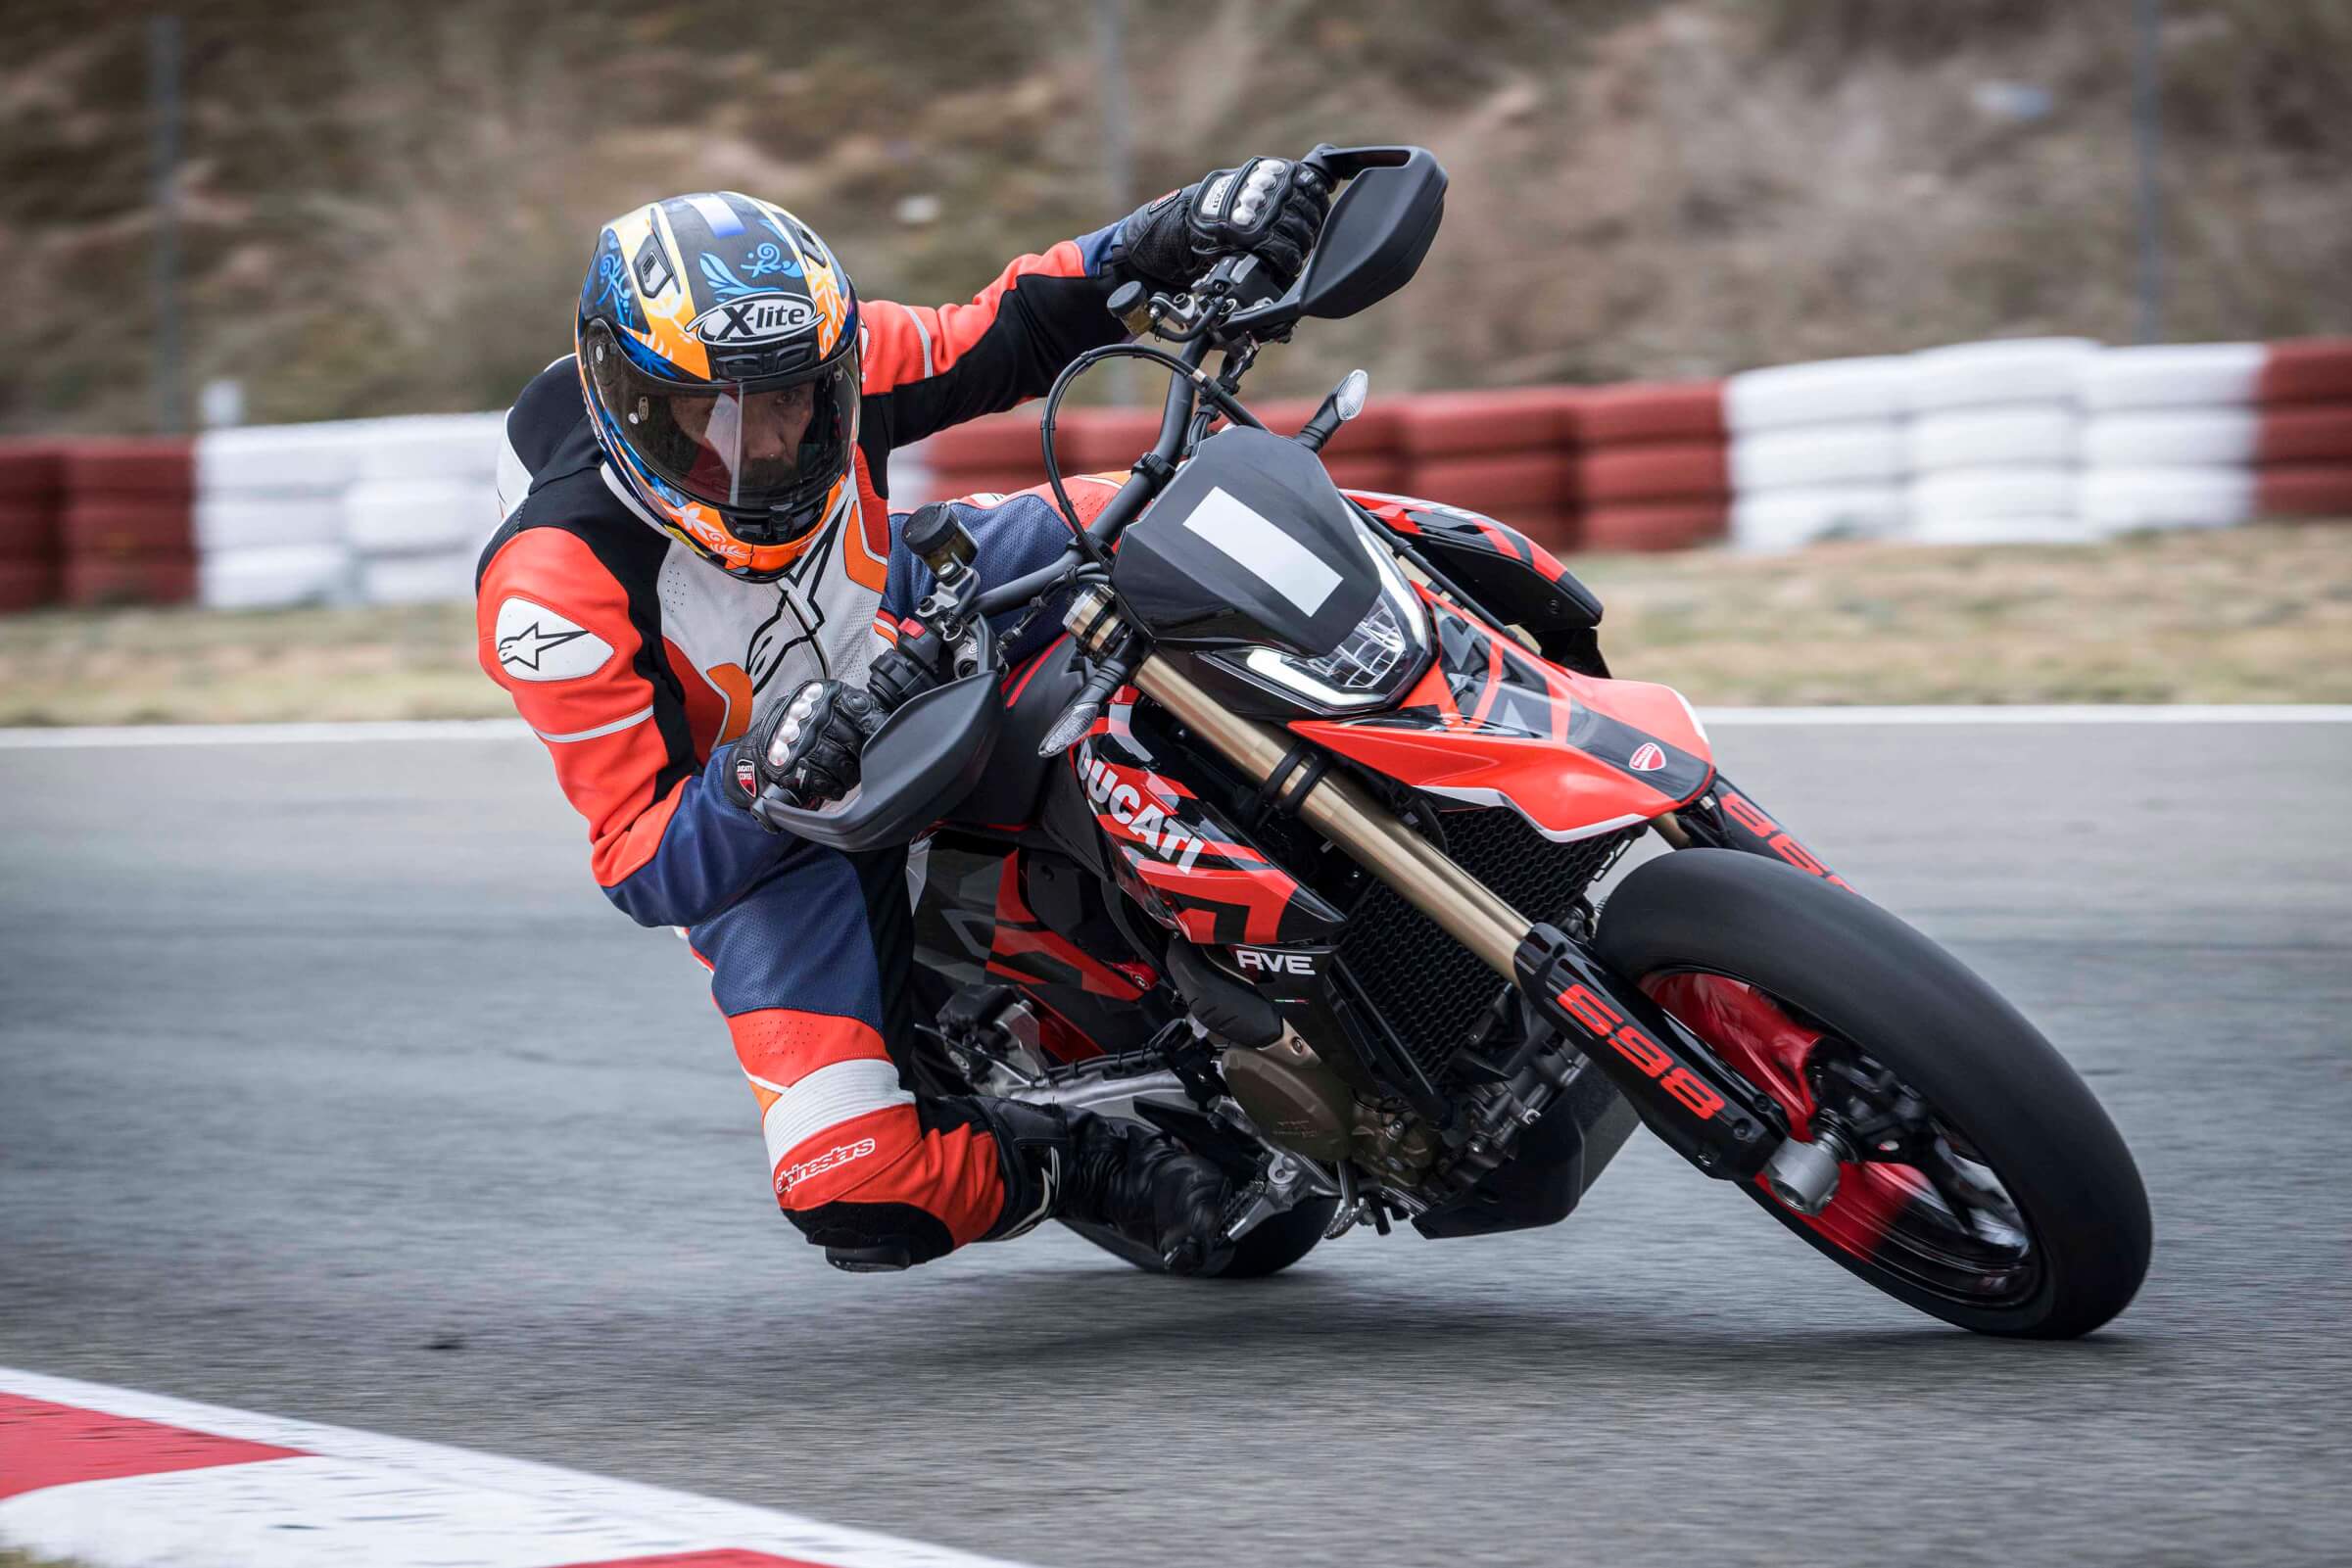 Ensaio – Ducati Hypermotard 698 Mono – beleza e eficácia